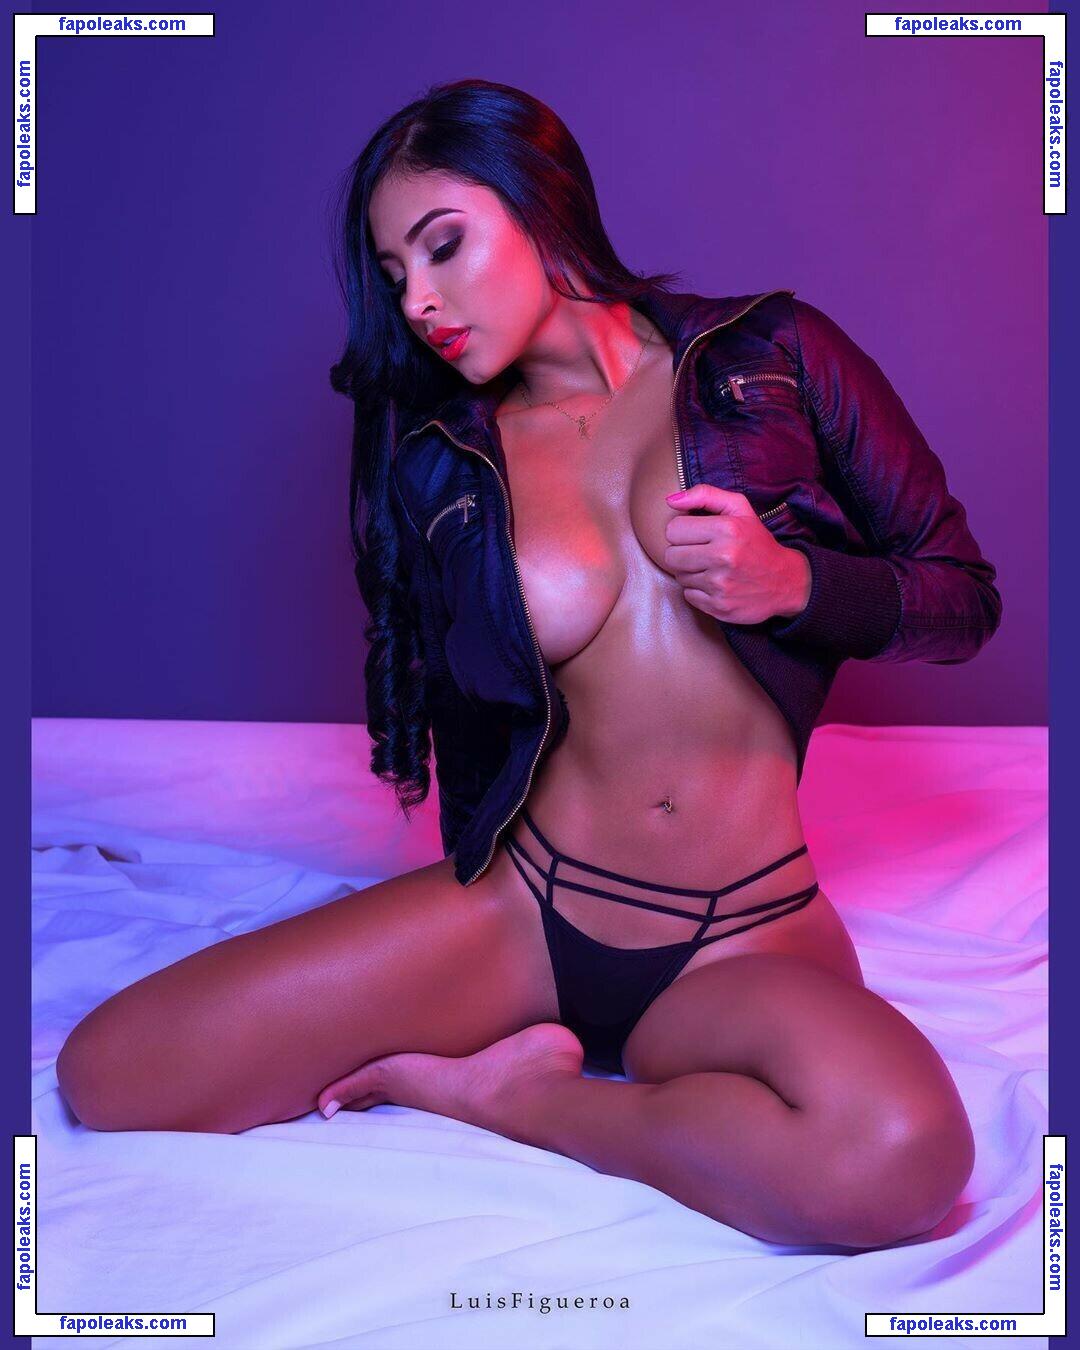 Karen Vasquez / karenovasquez nude photo #0006 from OnlyFans